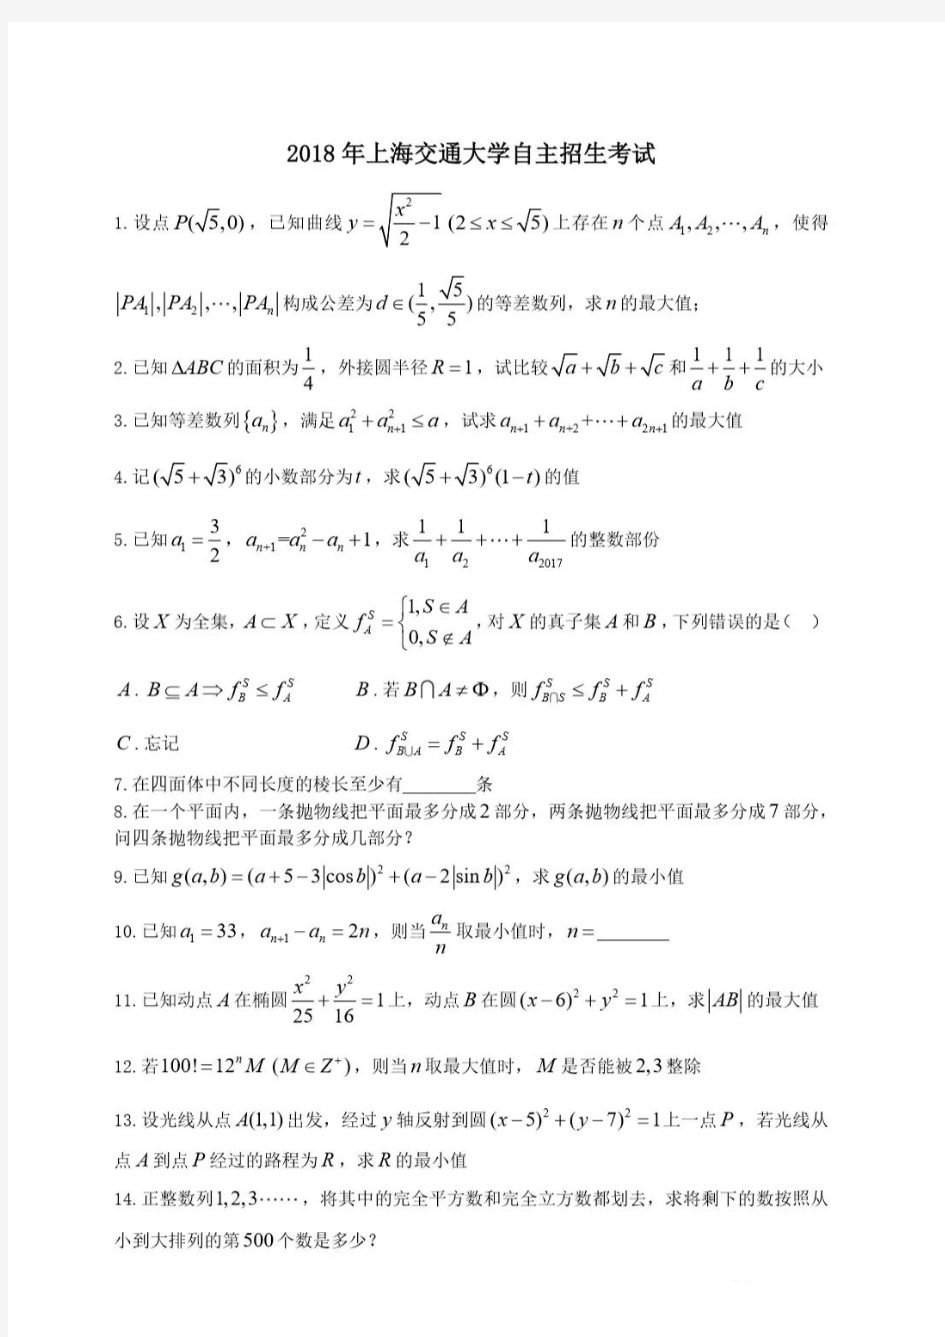 上海交通大学2018年自主招生考试数学试题(含答案)